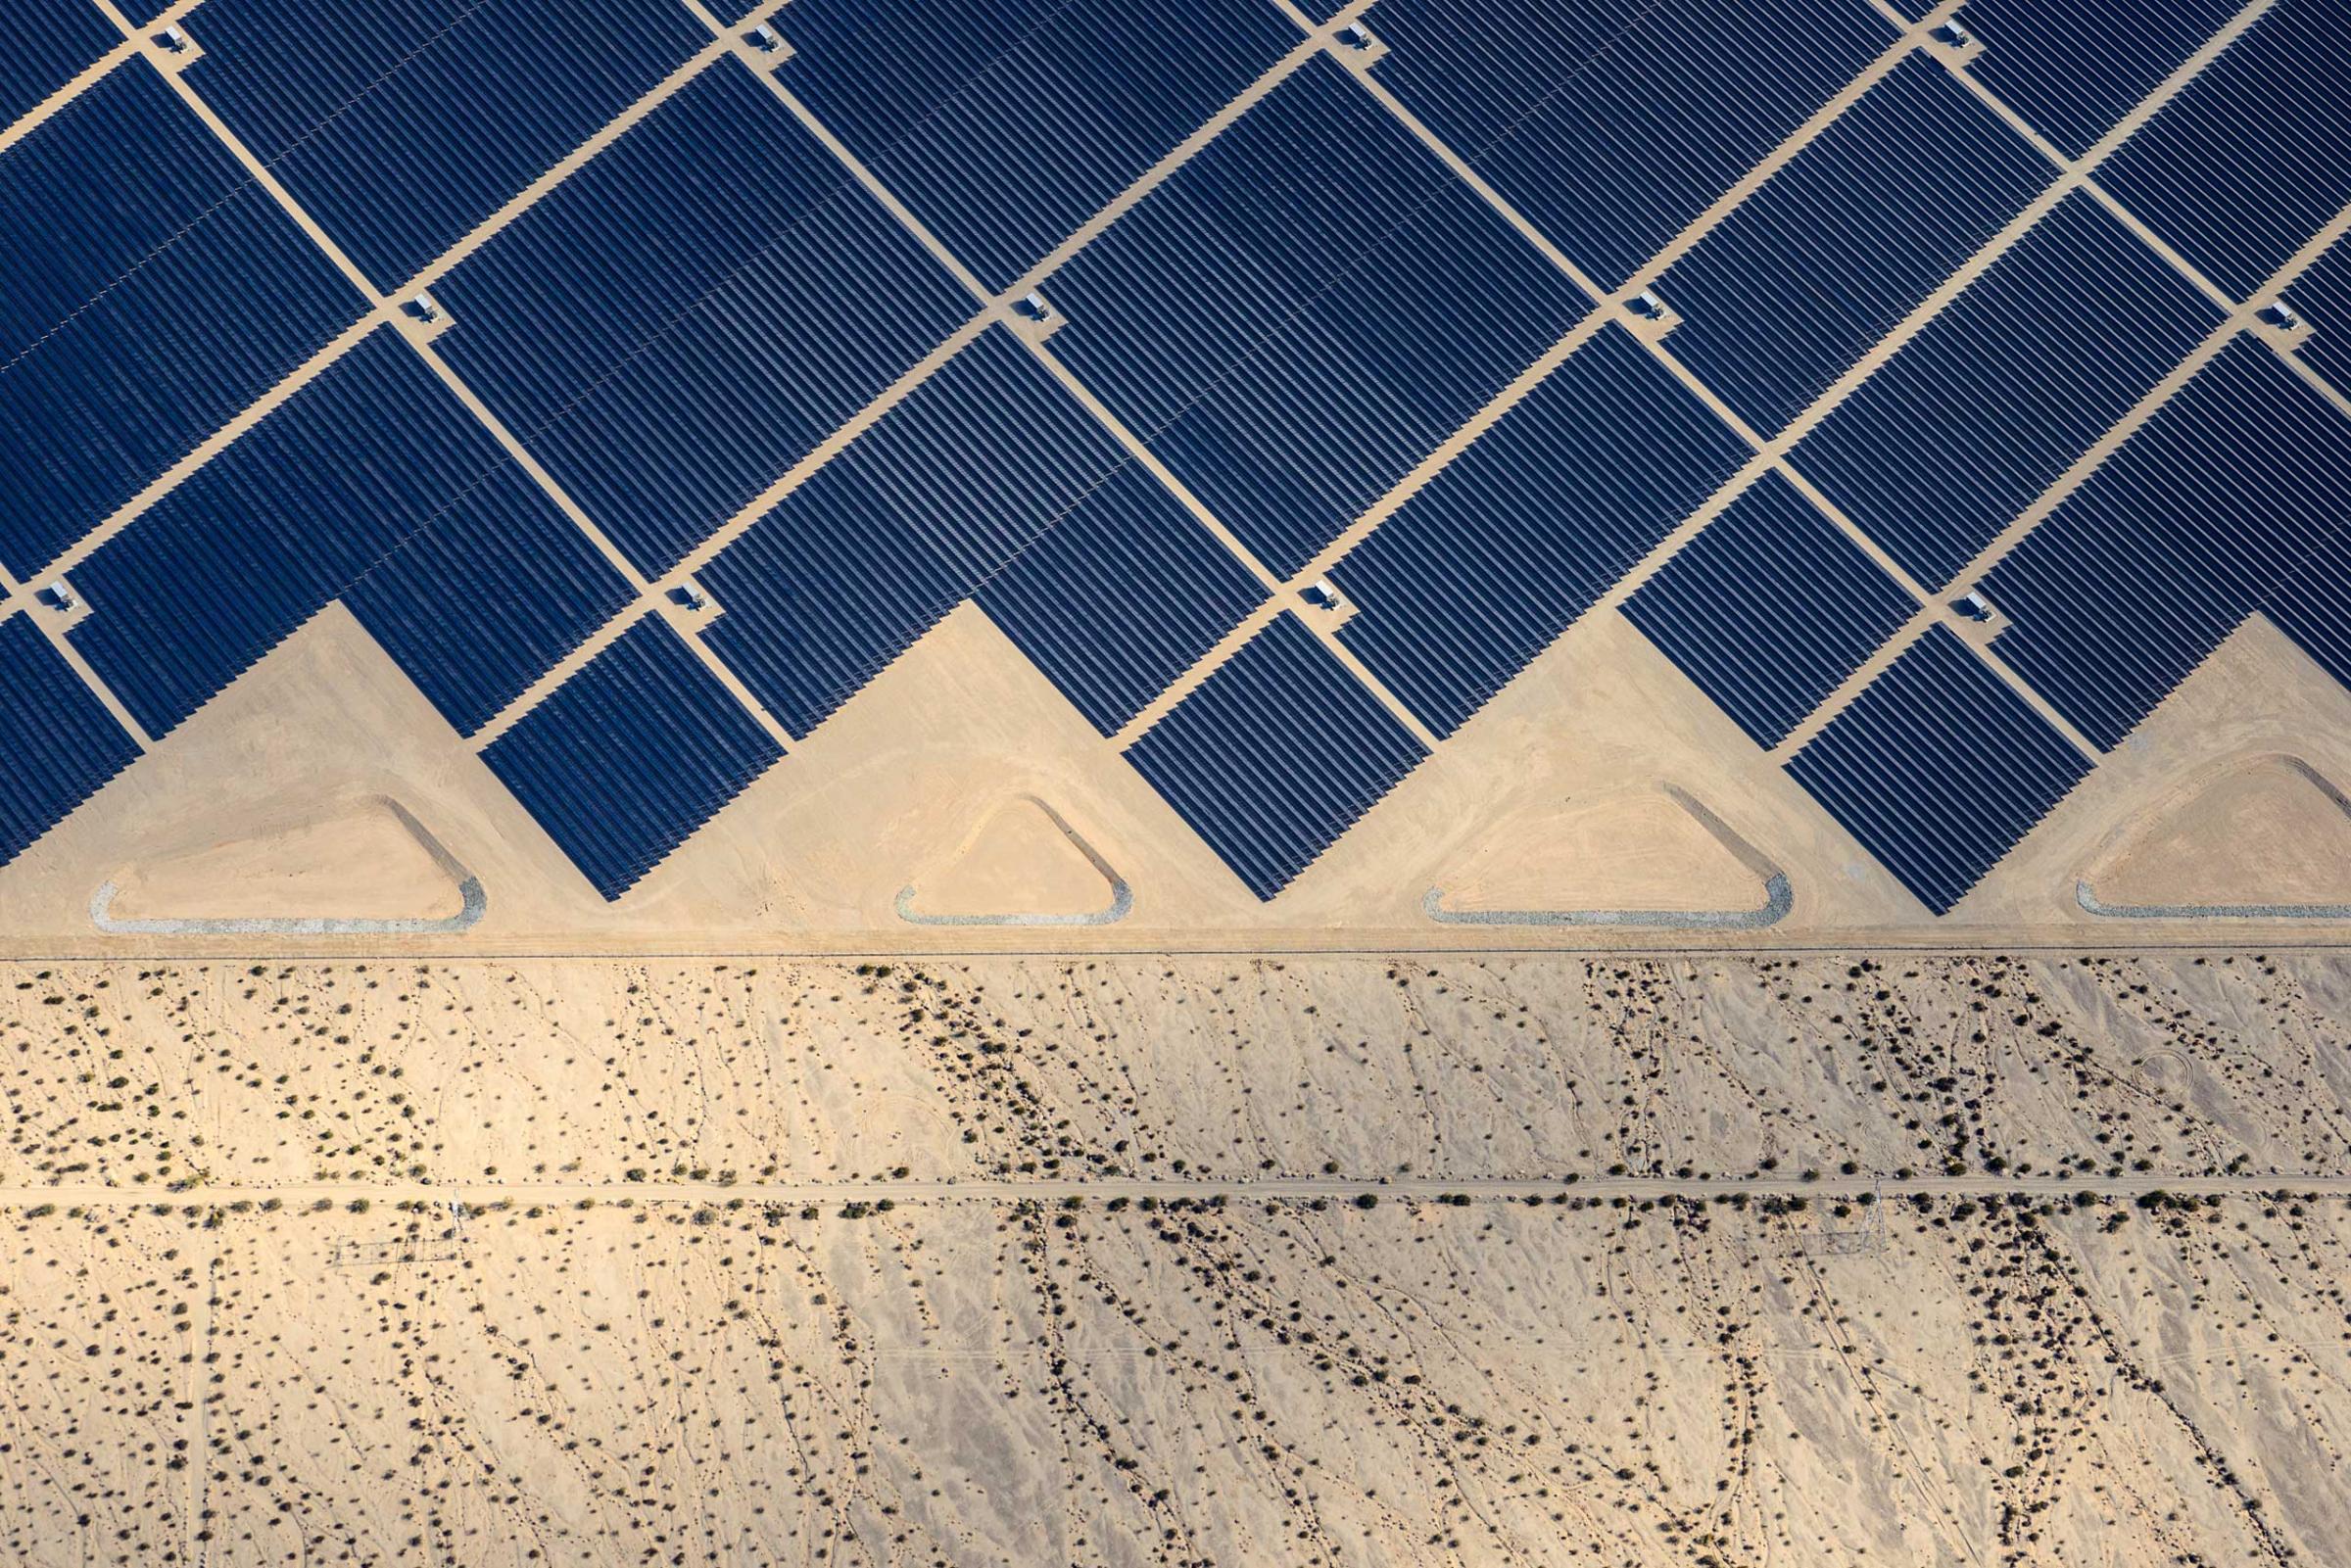 Desert Sunlight where 8 million solar panels power 160, 000 California homes. Jamey Stillings for TIME